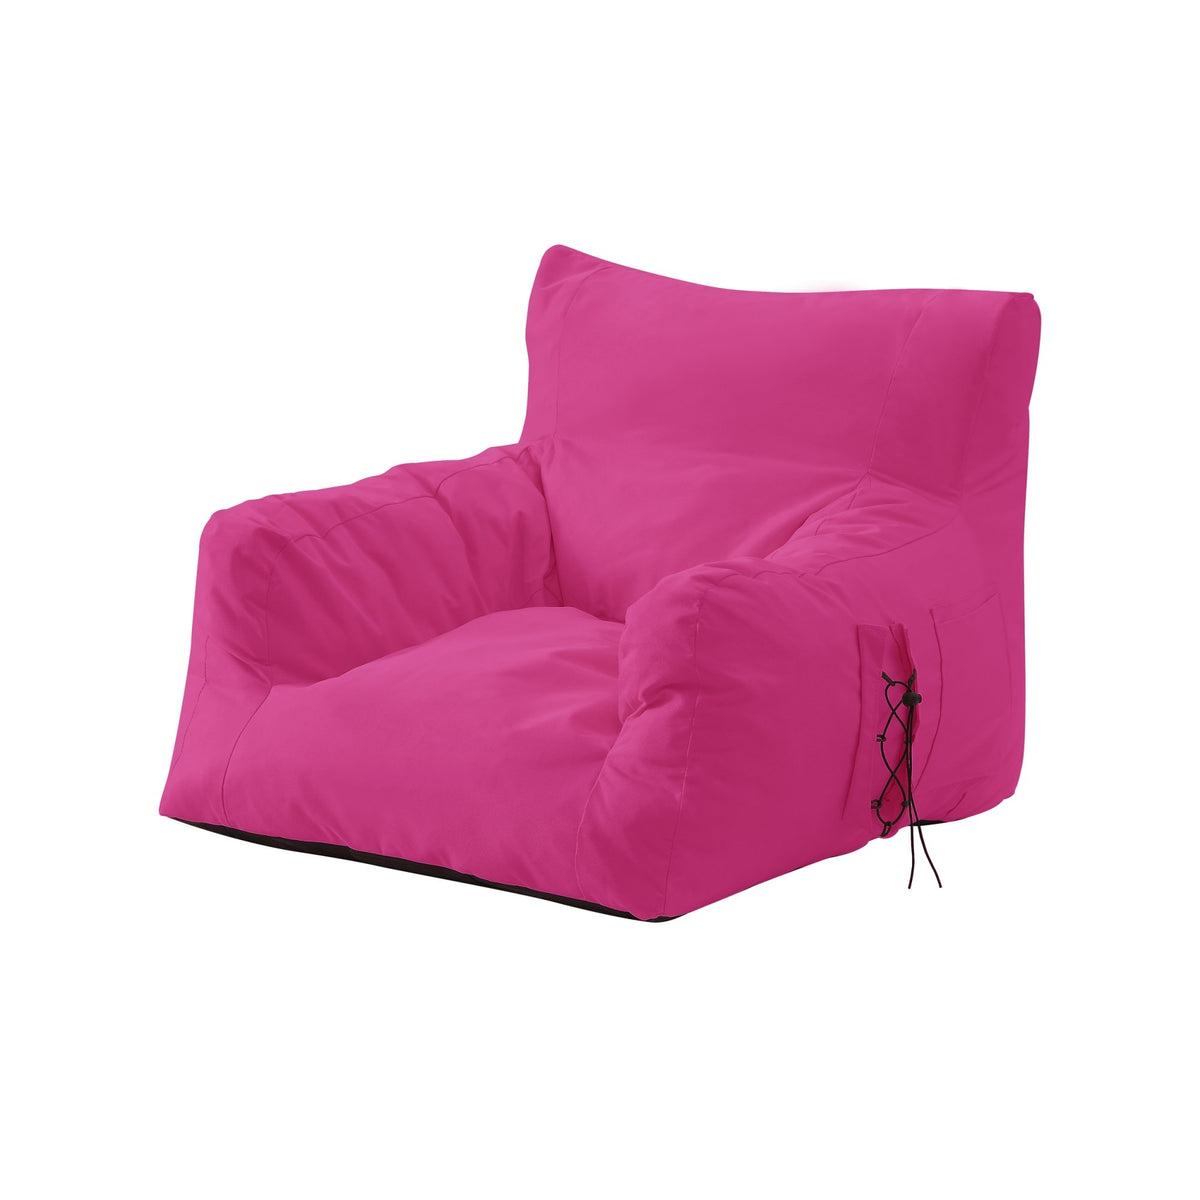 Loungie Nylon Bean Bag Chair Indoor/Outdoor Water Resistant Light Grey